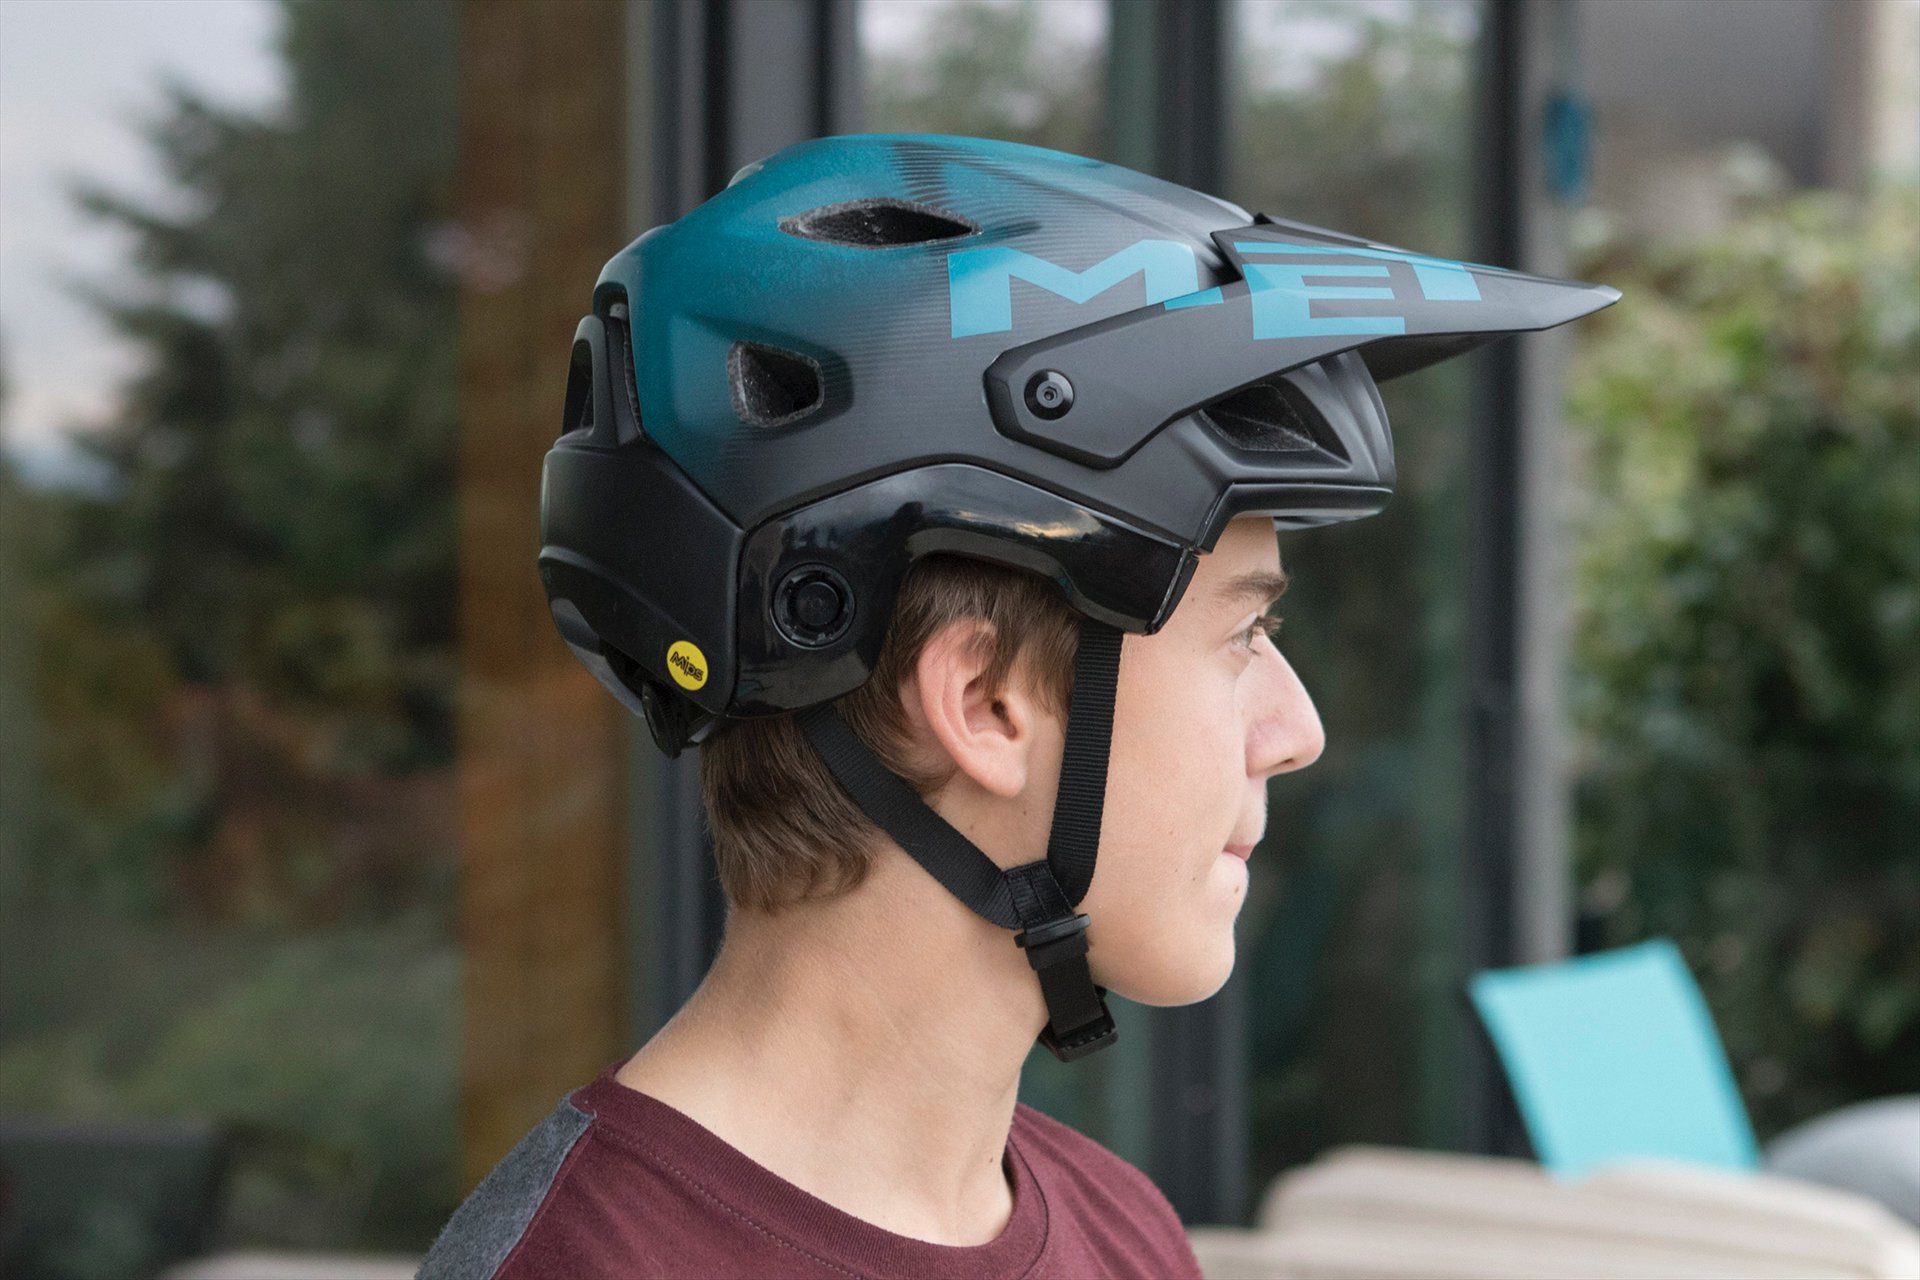 met parachute mcr mips helmet 2021